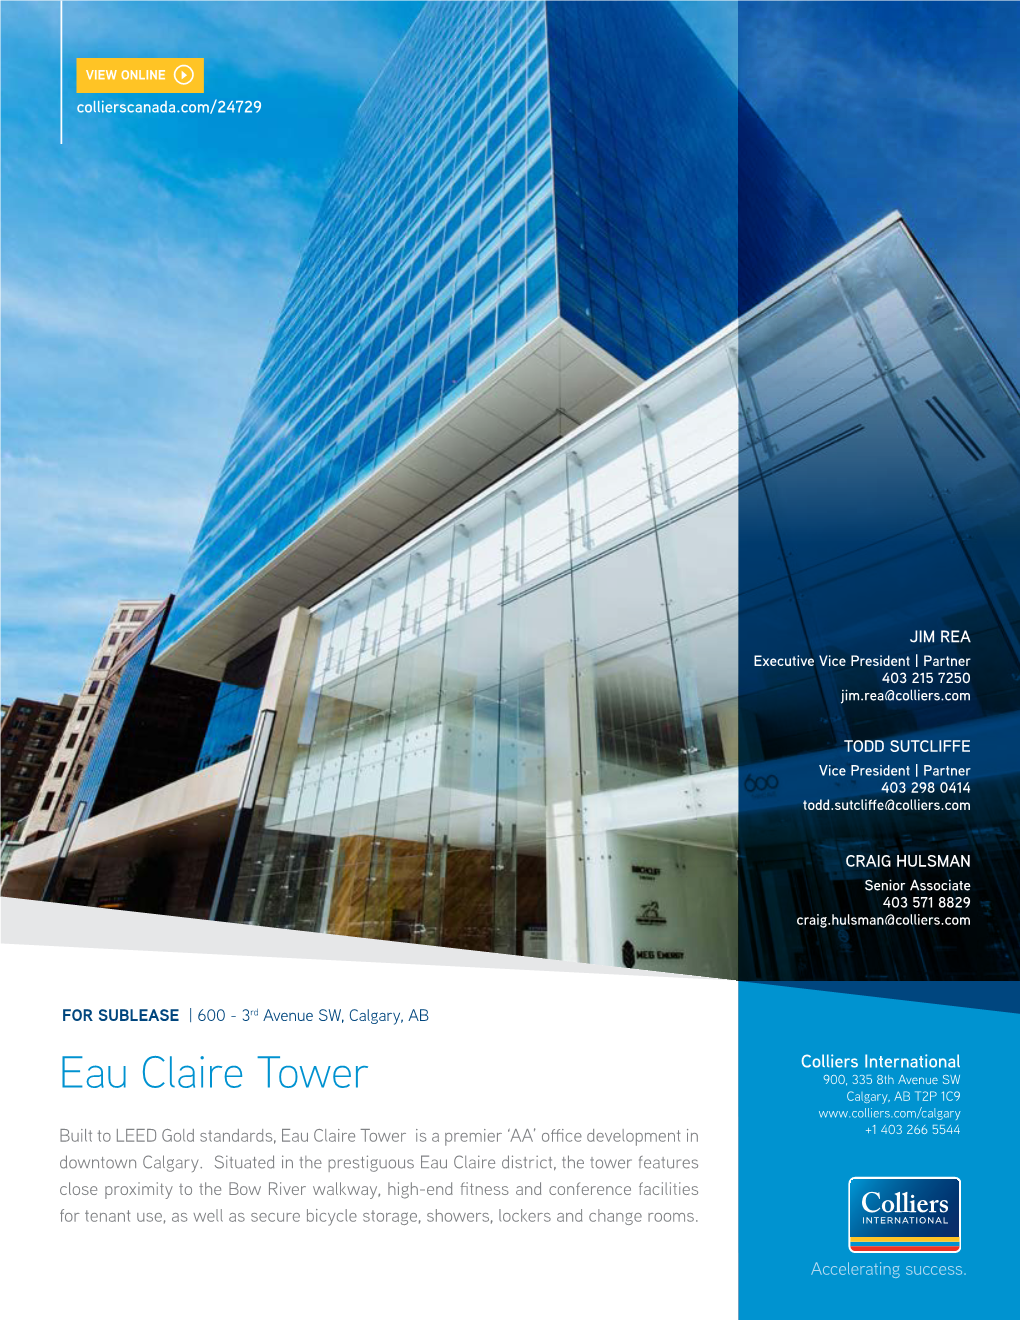 Eau Claire Tower